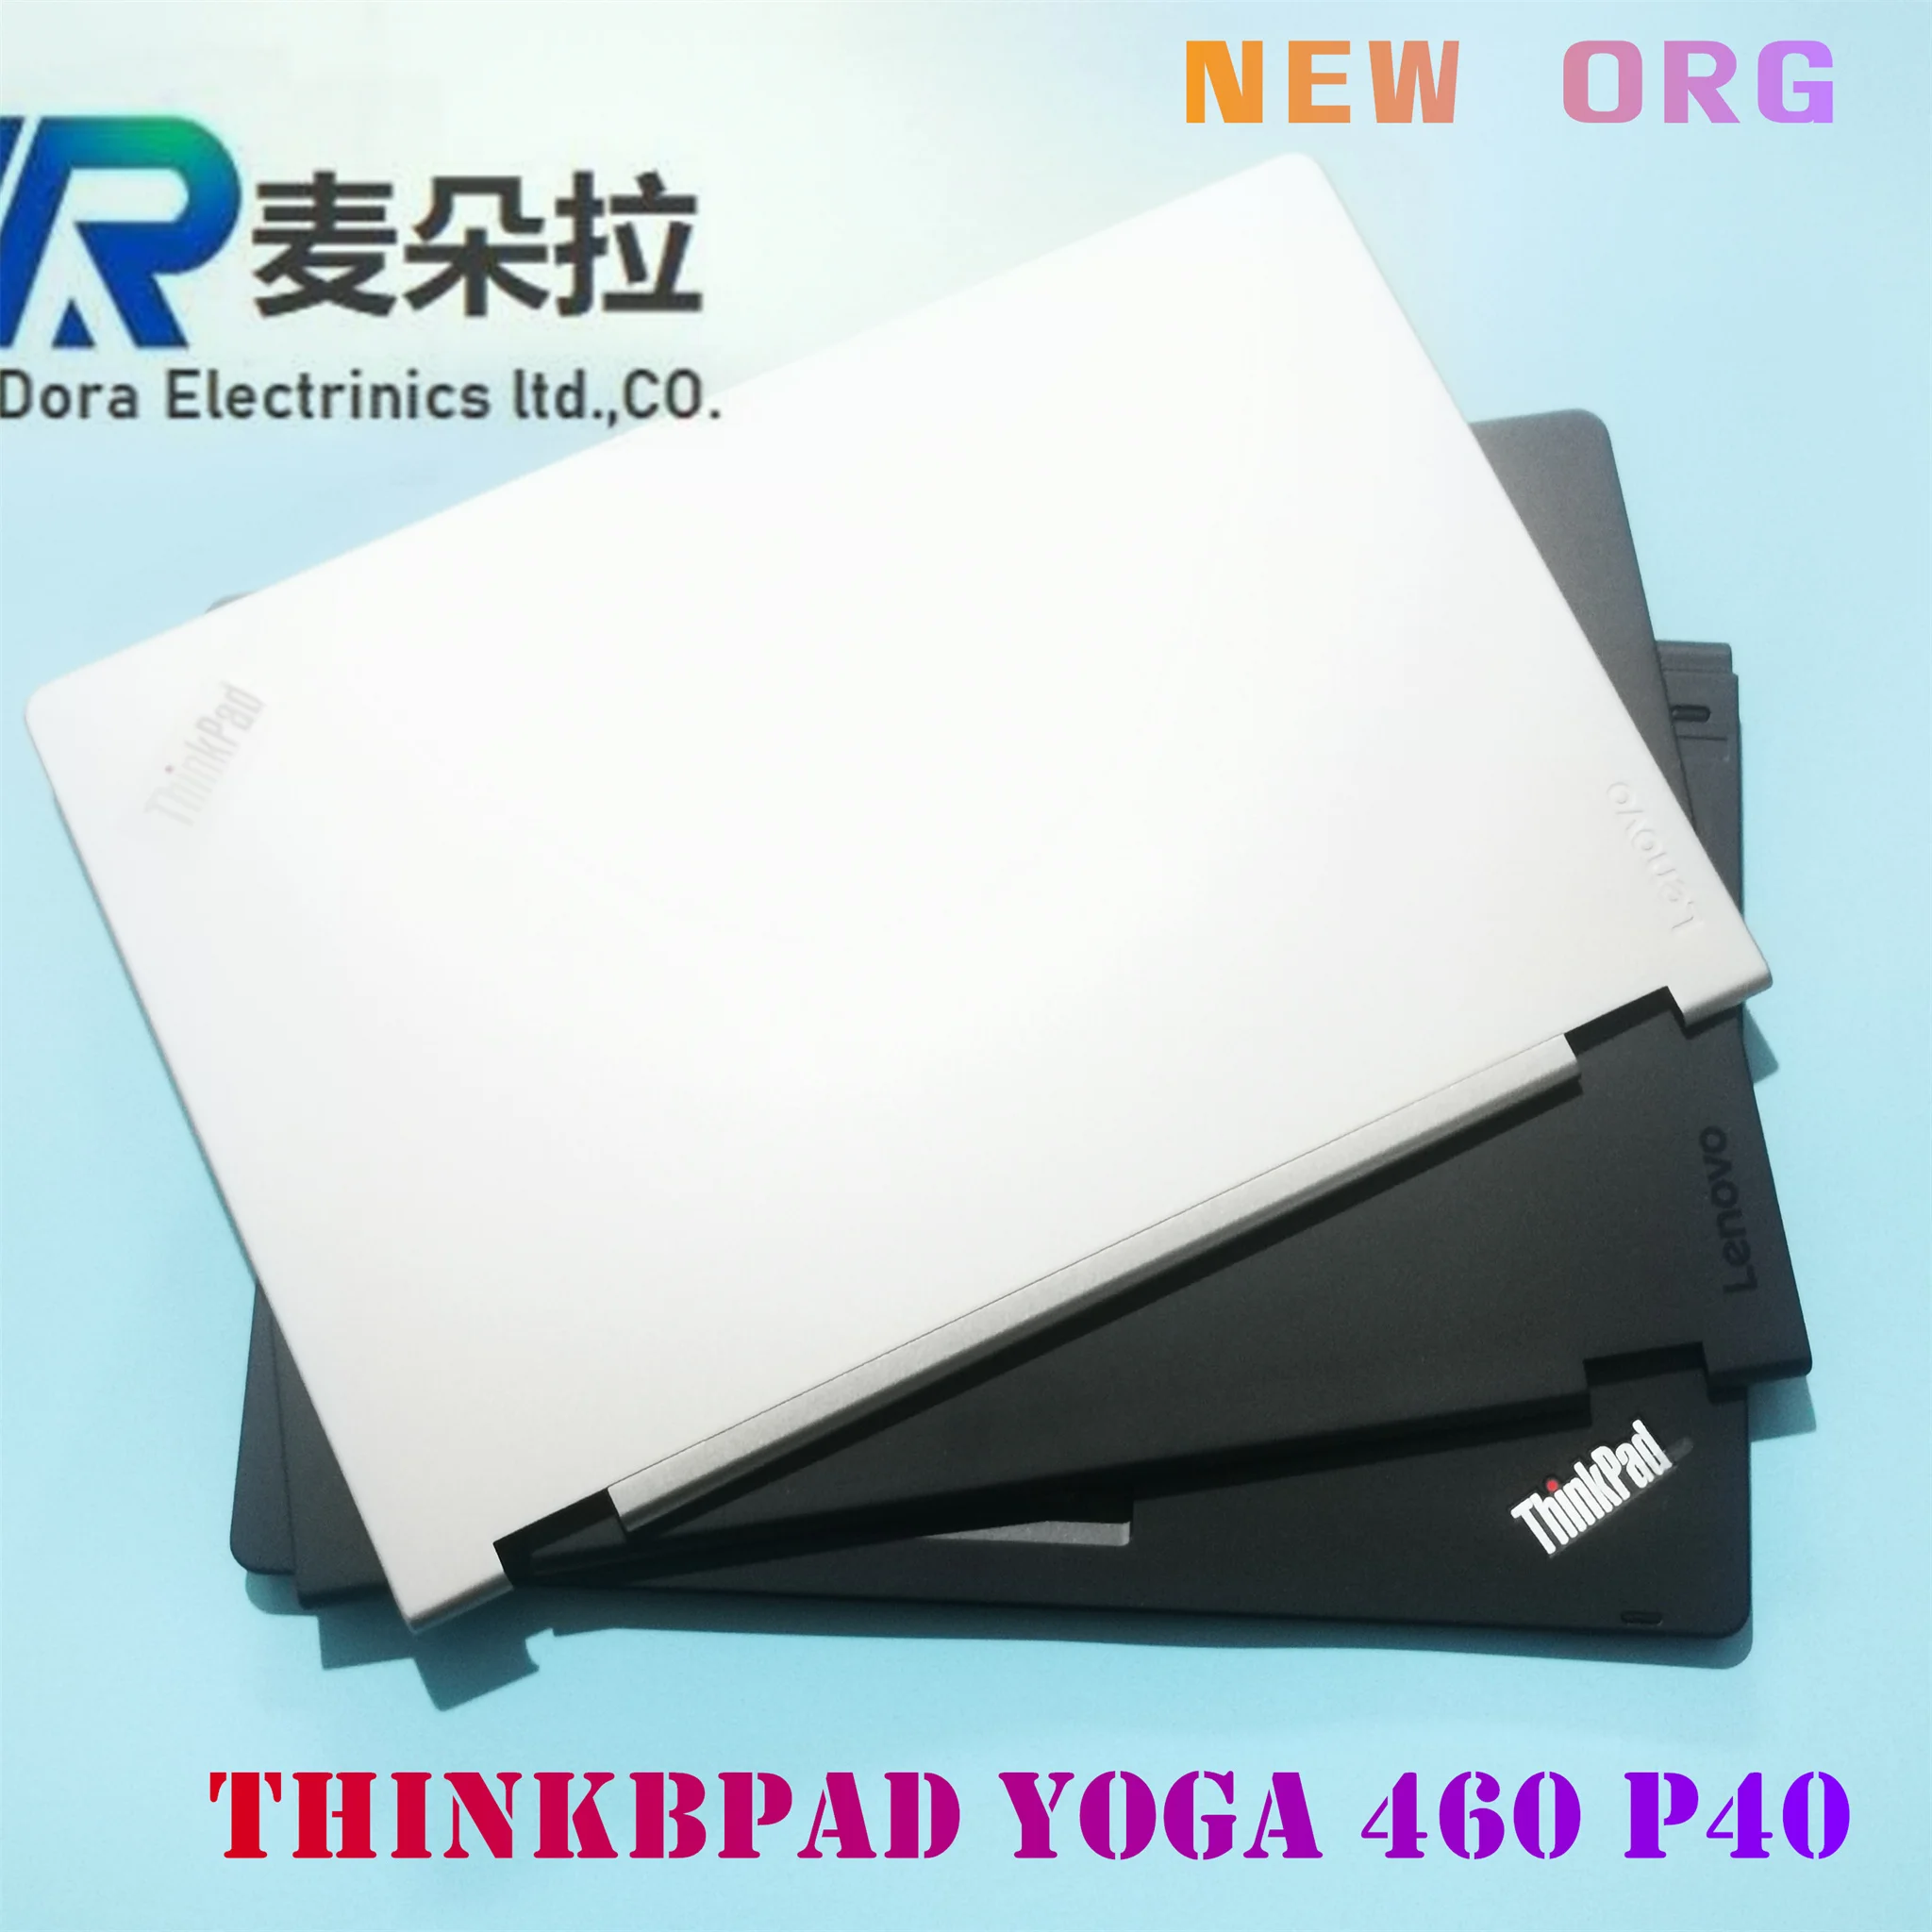 

NEW ORG laptop case for LENOVO THINKPAD YOGA 460 YOGA P40 20FY LCD Back cover /Front bezel/ palmrest